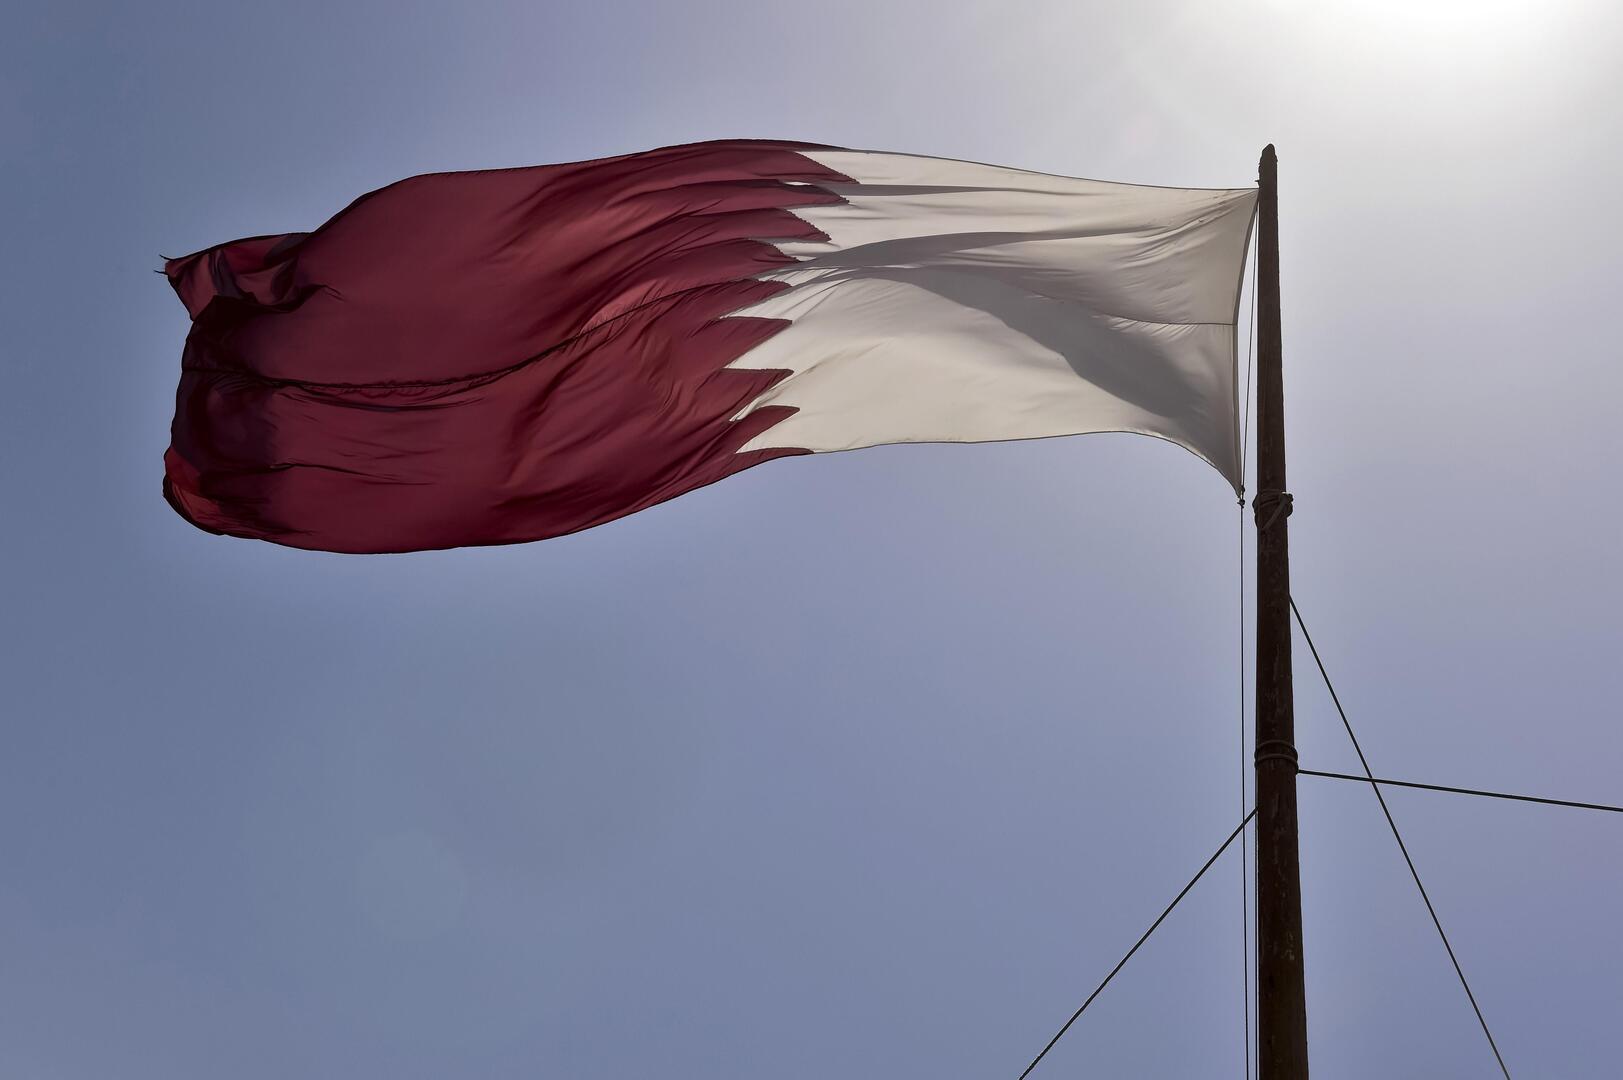 قطر.. ضبط كميات كبيرة من الحبوب المخدرة داخل شحنة حلويات